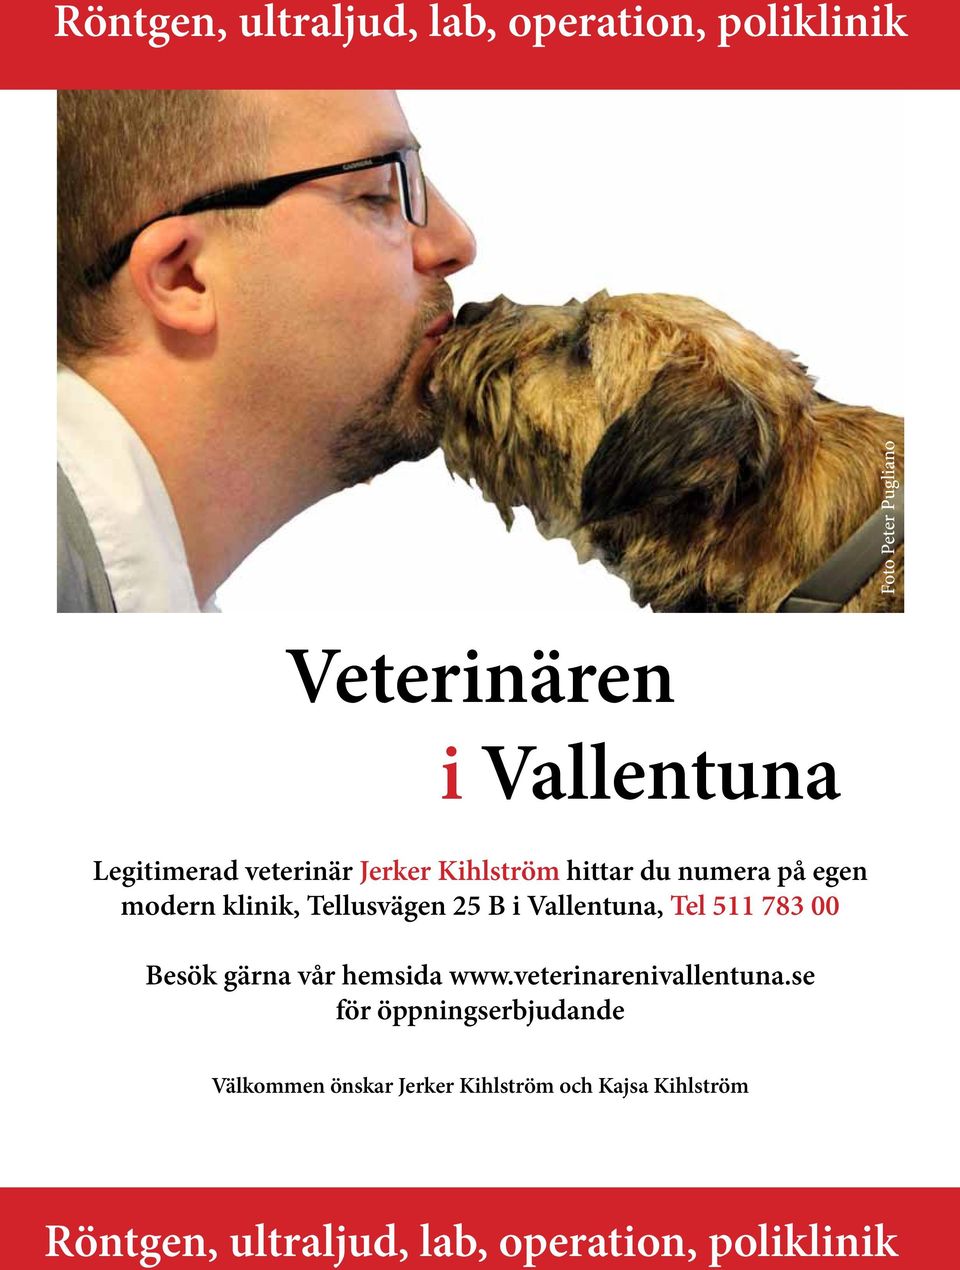 Vallentuna, Tel 511 783 00 Besök gärna vår hemsida www.veterinarenivallentuna.